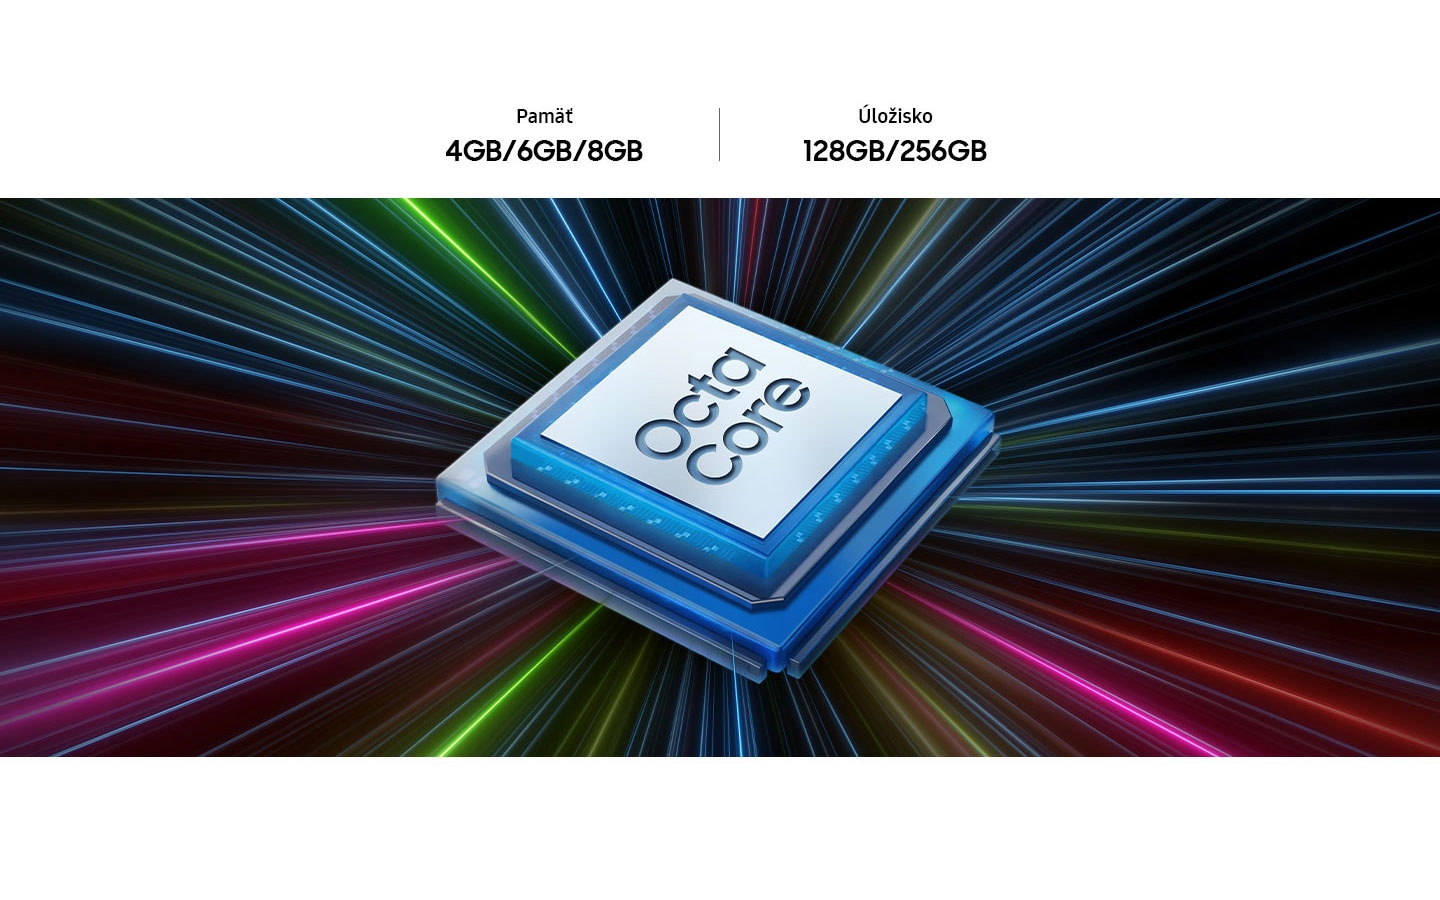 Modrý mikročip s bielym stredom zobrazuje v strede text „Octa Core“. Za mikročipom sa zbiehajú lúče svetla v rôznych farbách. Pamäť 4GB/6GB/8GB, úložisko 128GB/256GB.